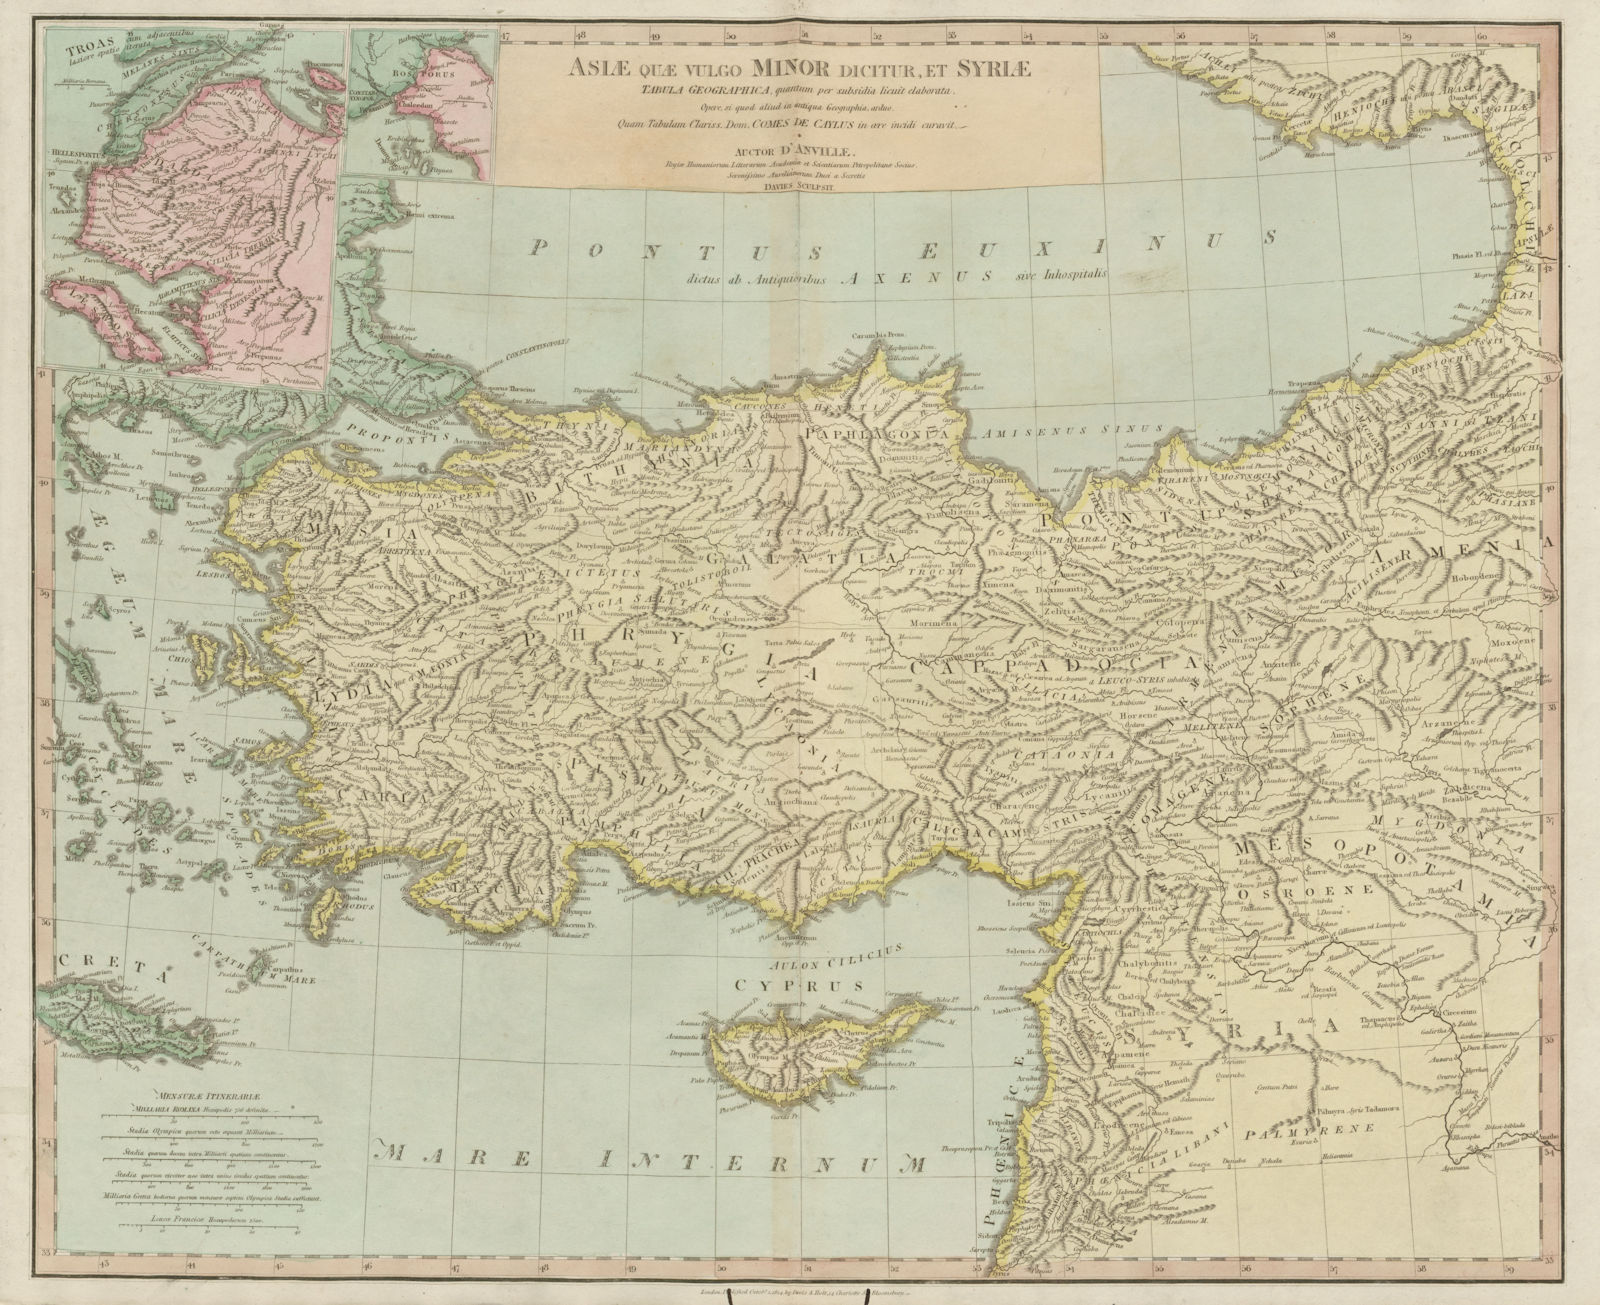 Associate Product "Asiae quae vulgo Minor dicitur, et Syriae". Ancient Turkey. D'ANVILLE 1815 map